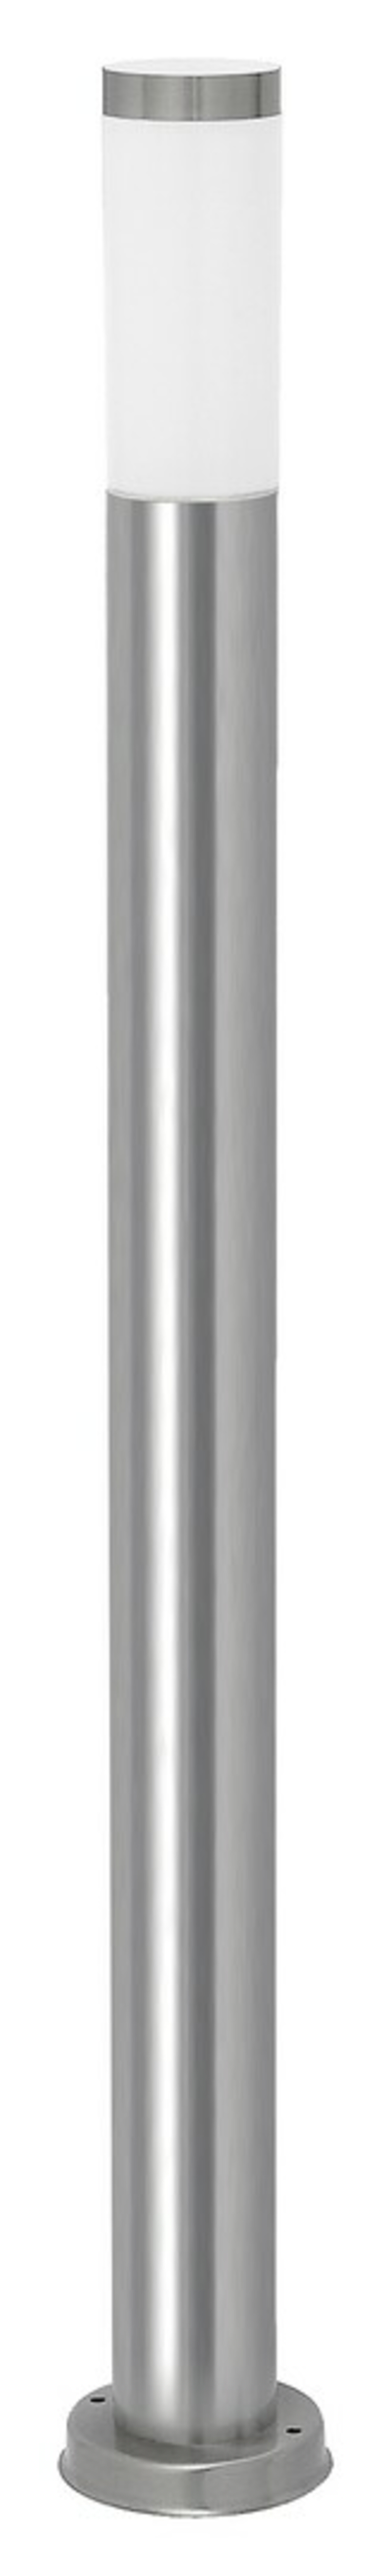 Rabalux venkovní sloupkové svítidlo Inox torch E27 1x MAX 25W saténová chromová IP44 8265